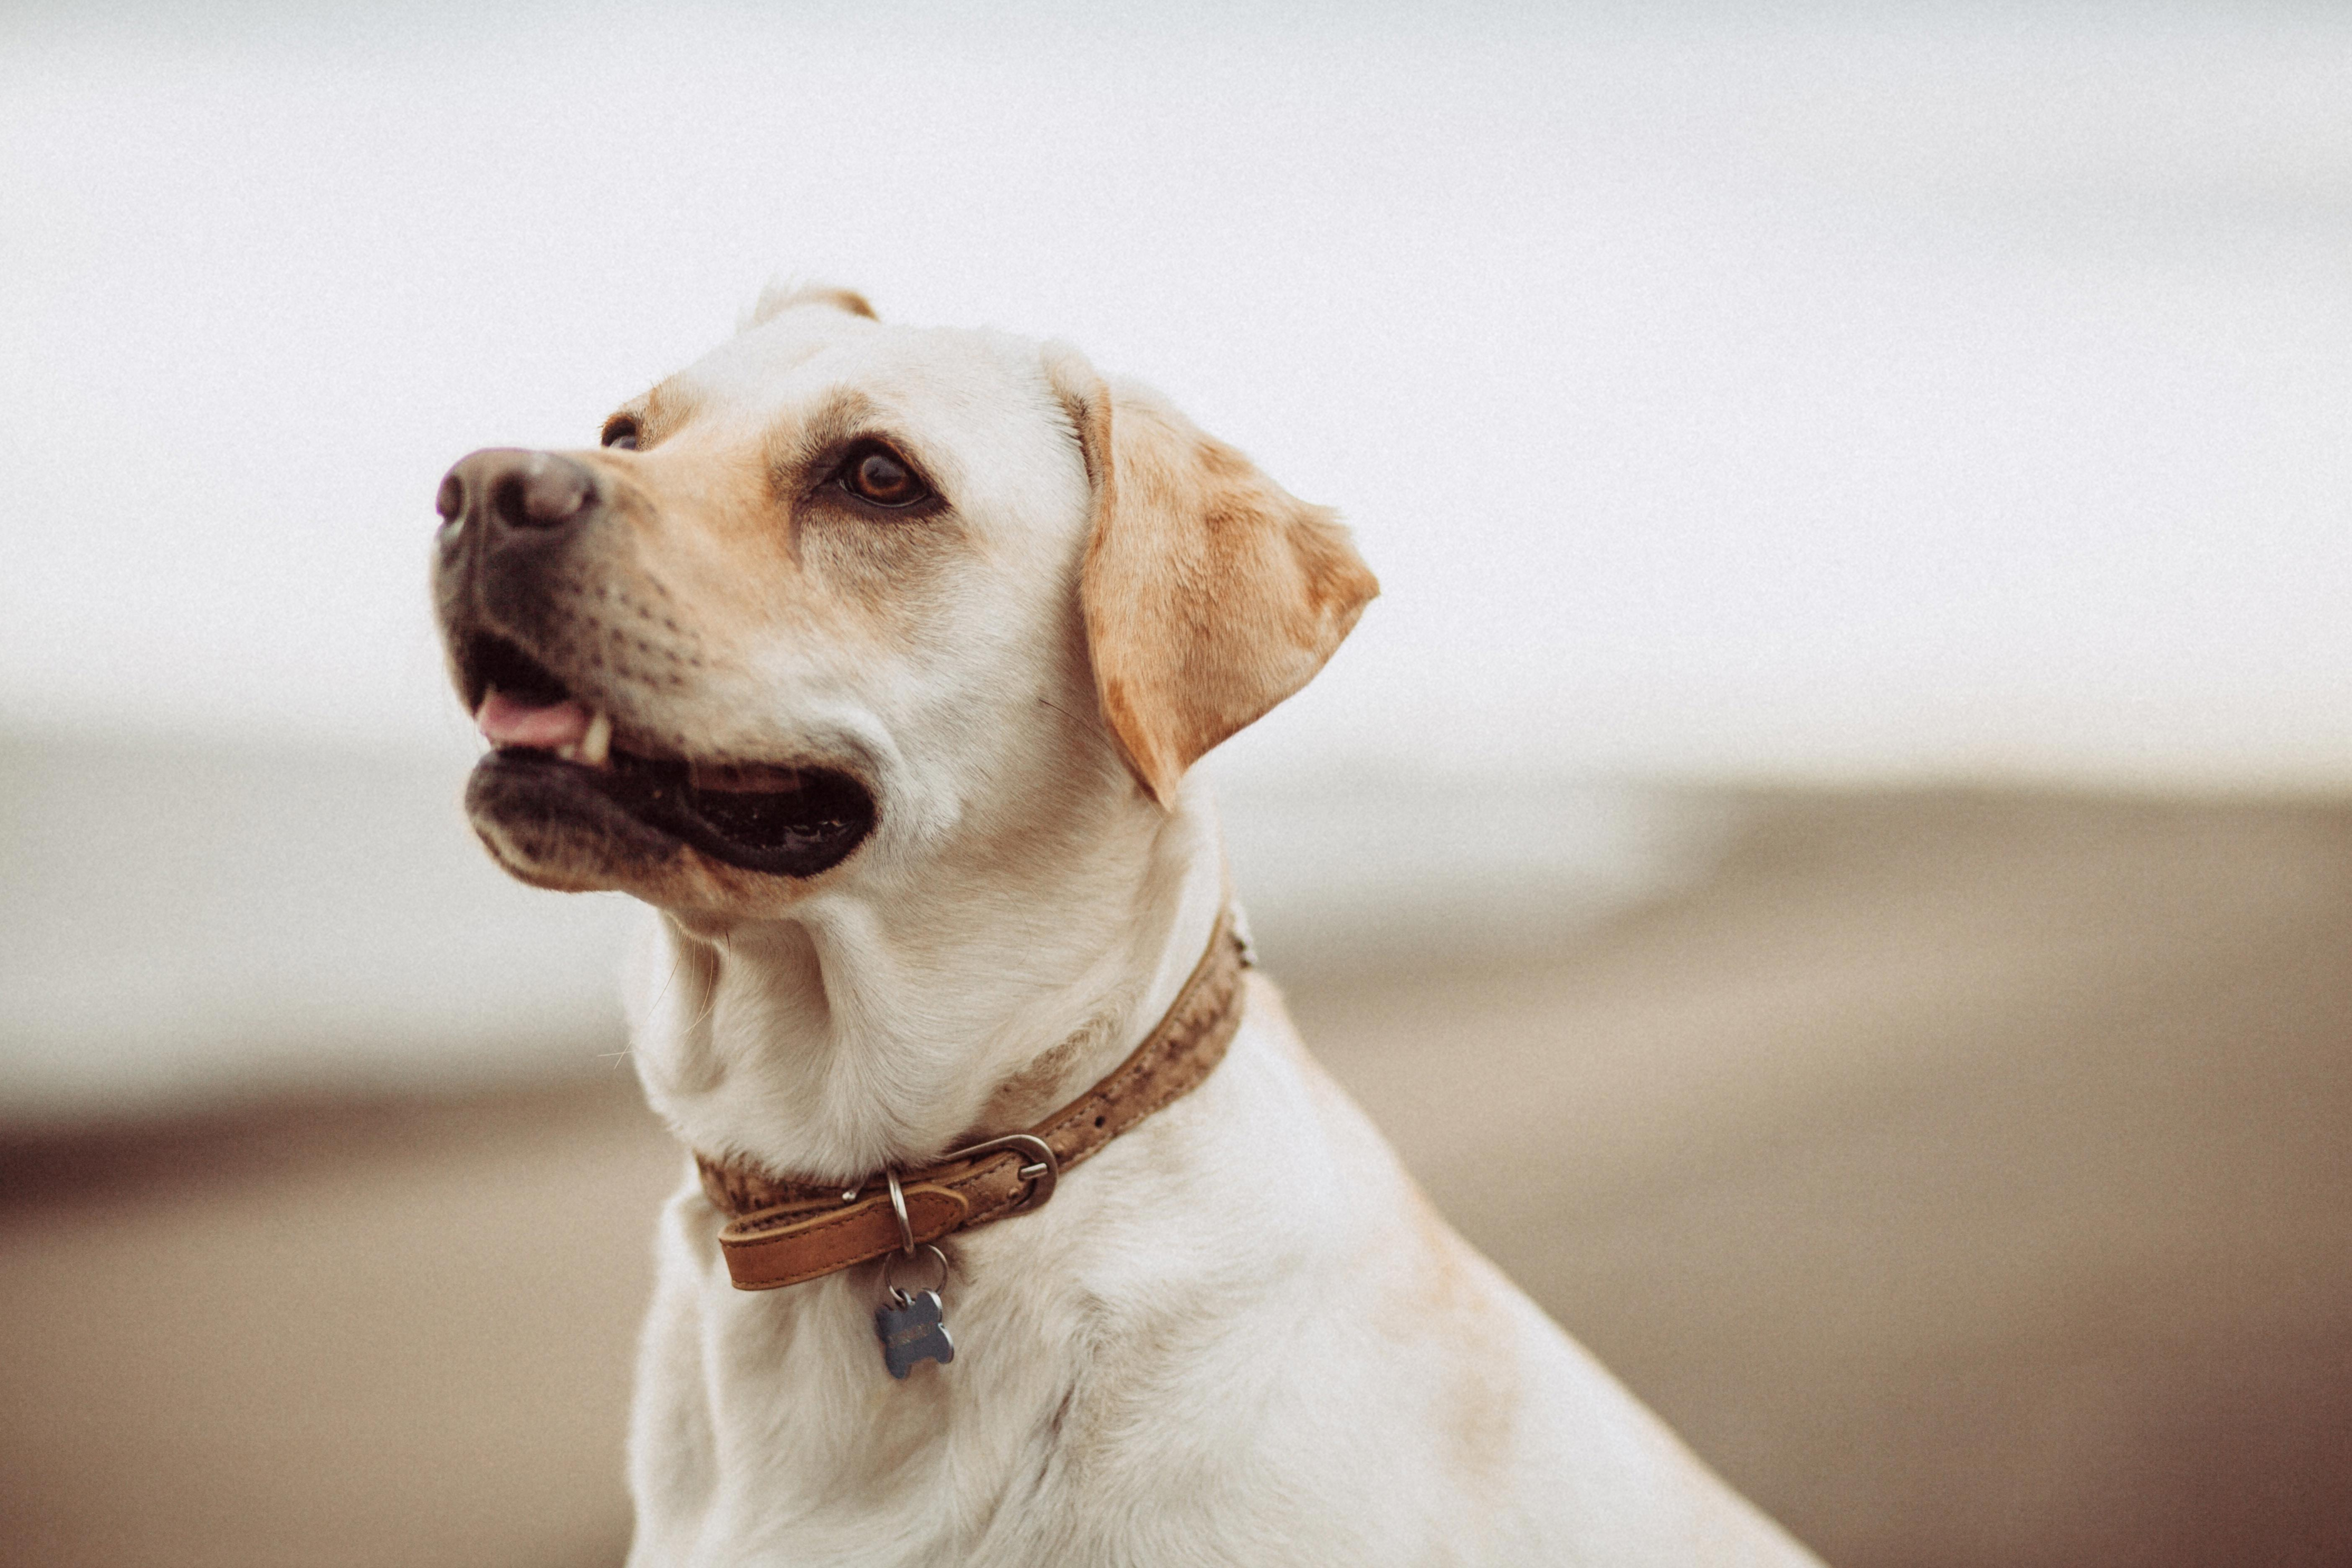 How to Prevent Labrador Retriever Bites and Teach Good Behavior